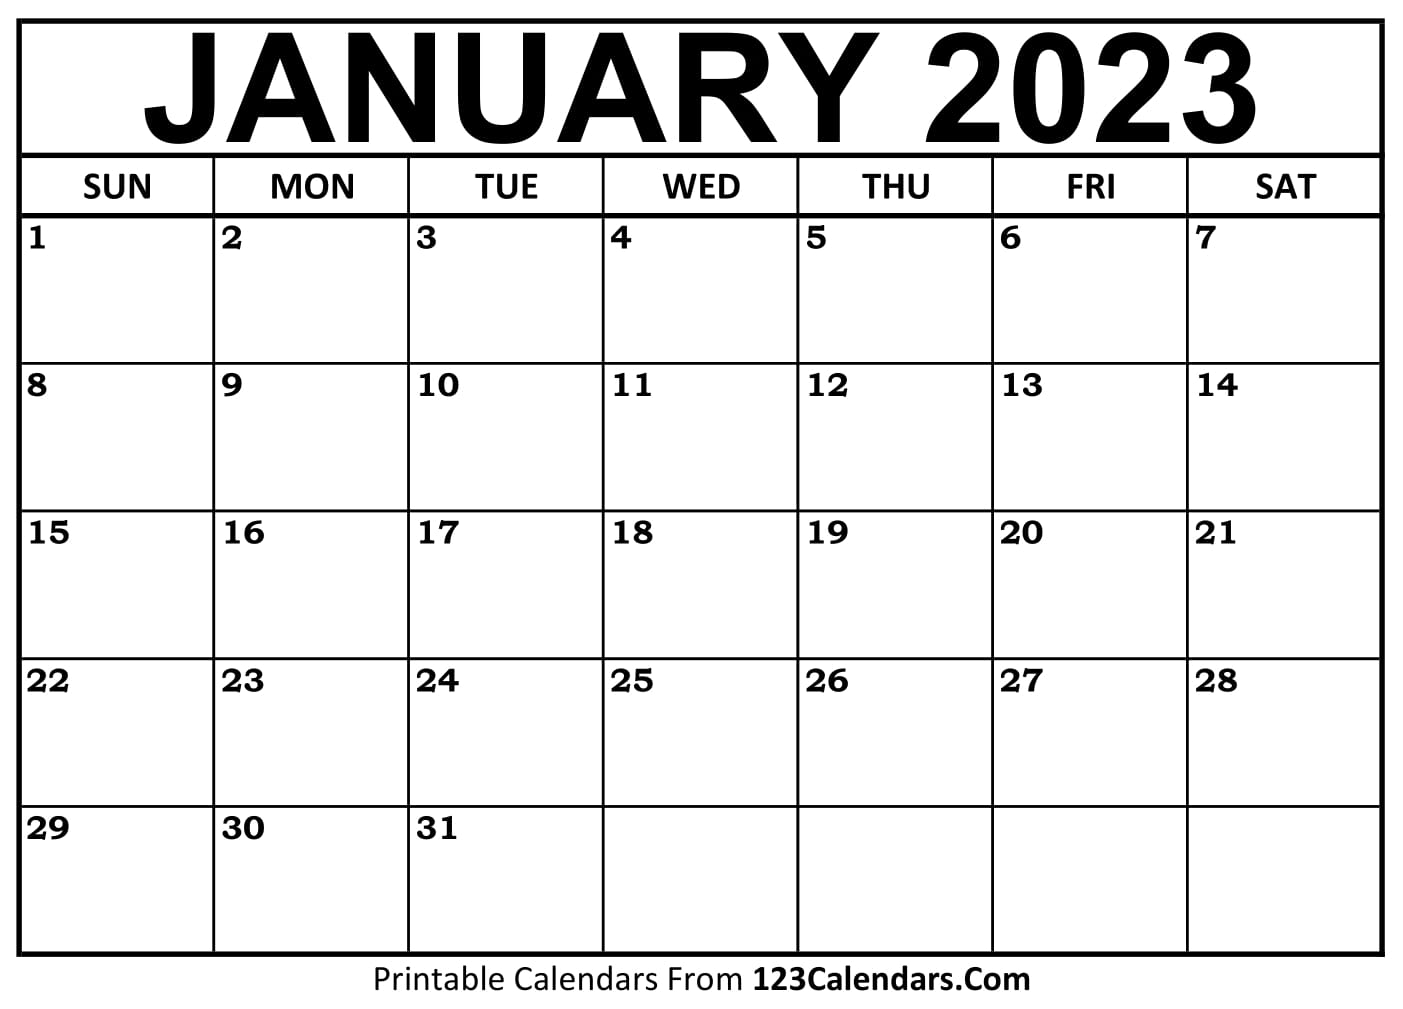 printable january 2023 calendar templates 123calendars com